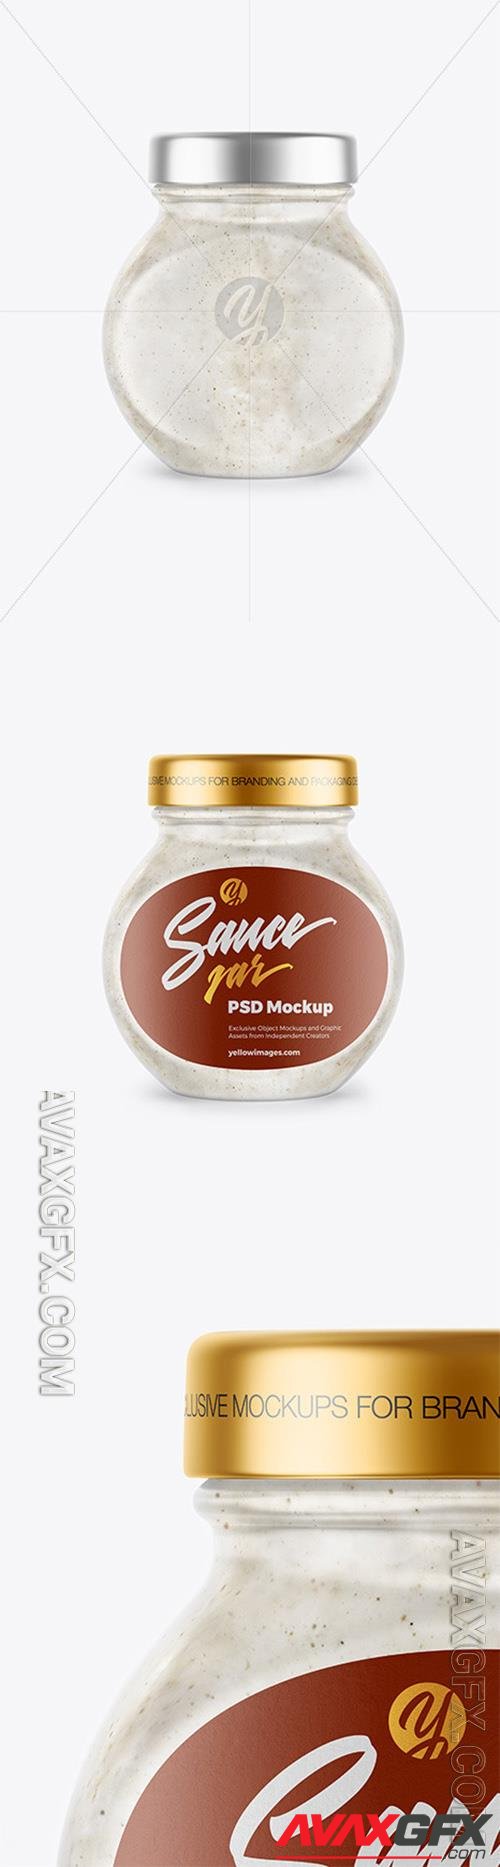 Sour Cream Sauce w/ Mushrooms Jar Mockup 81545 TIF